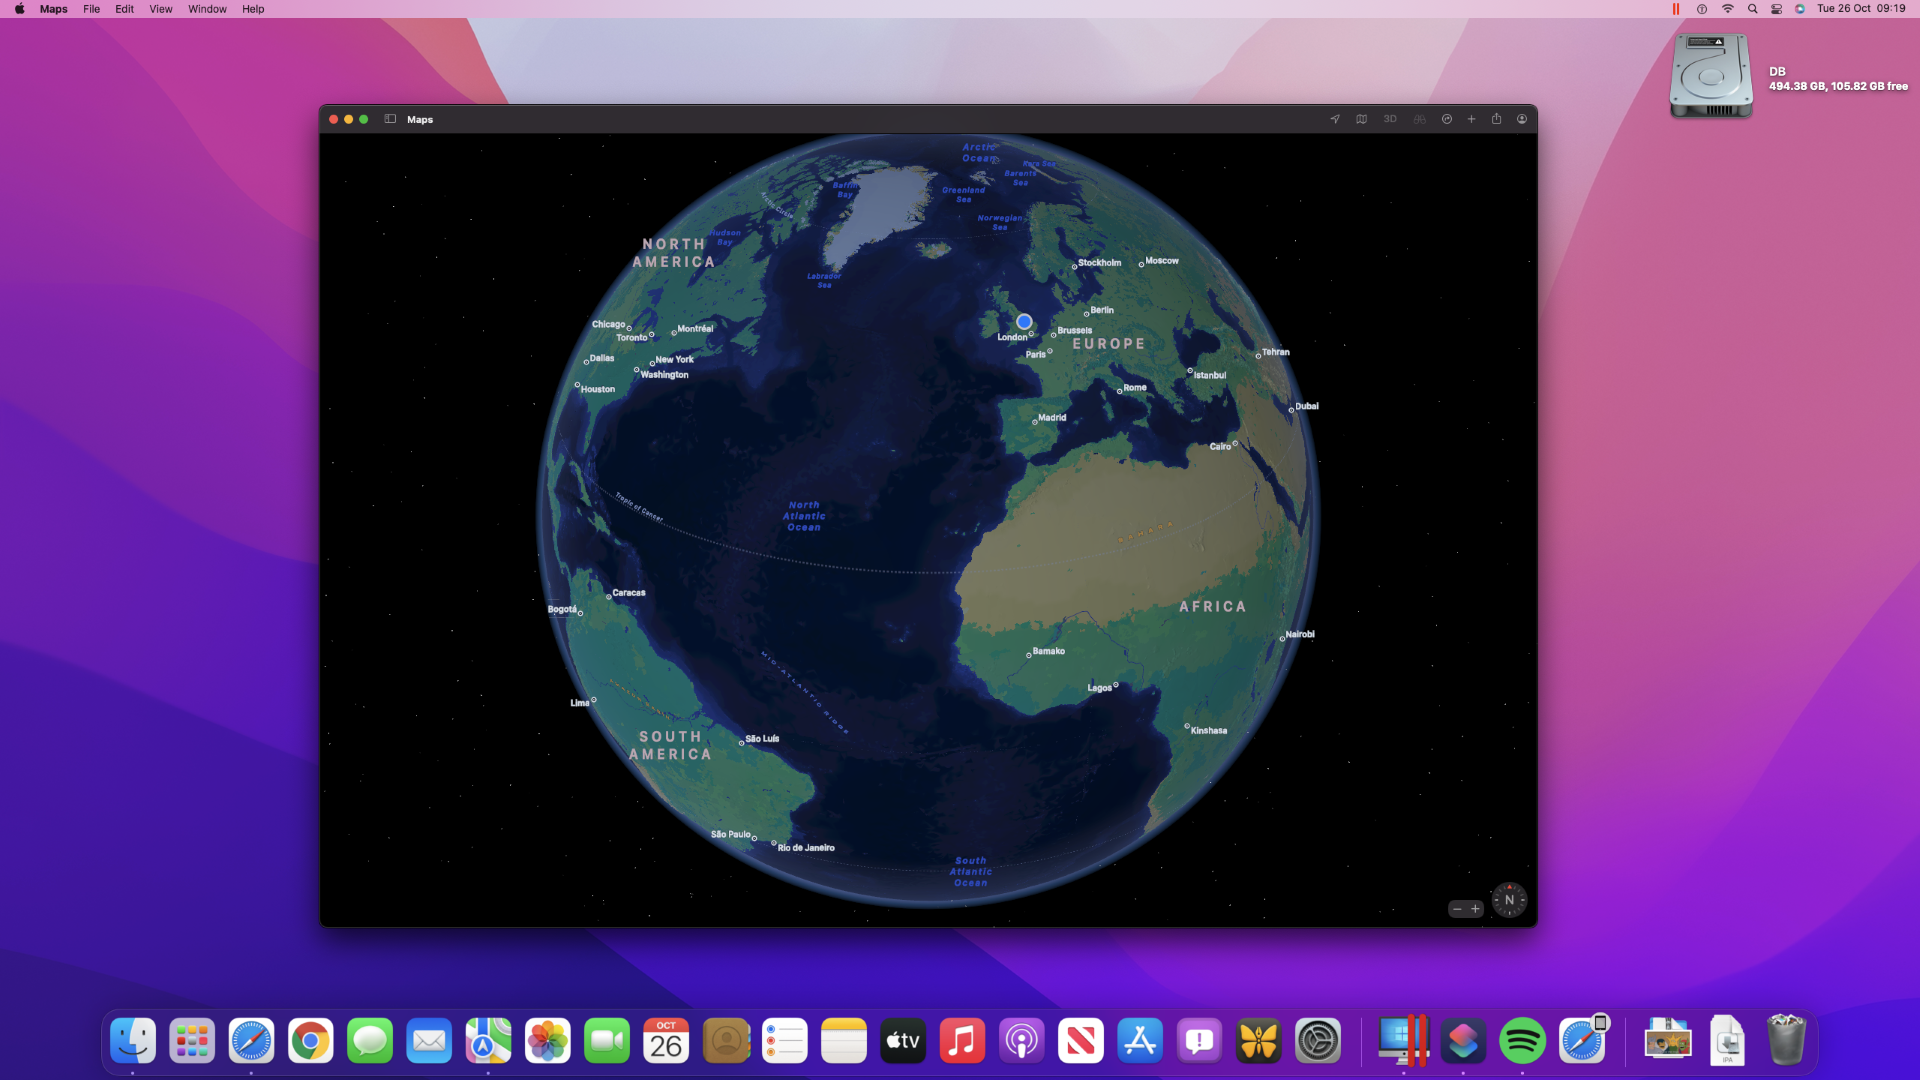 Kartor I macOS 12 Monterey som visar den nya globfunktionen